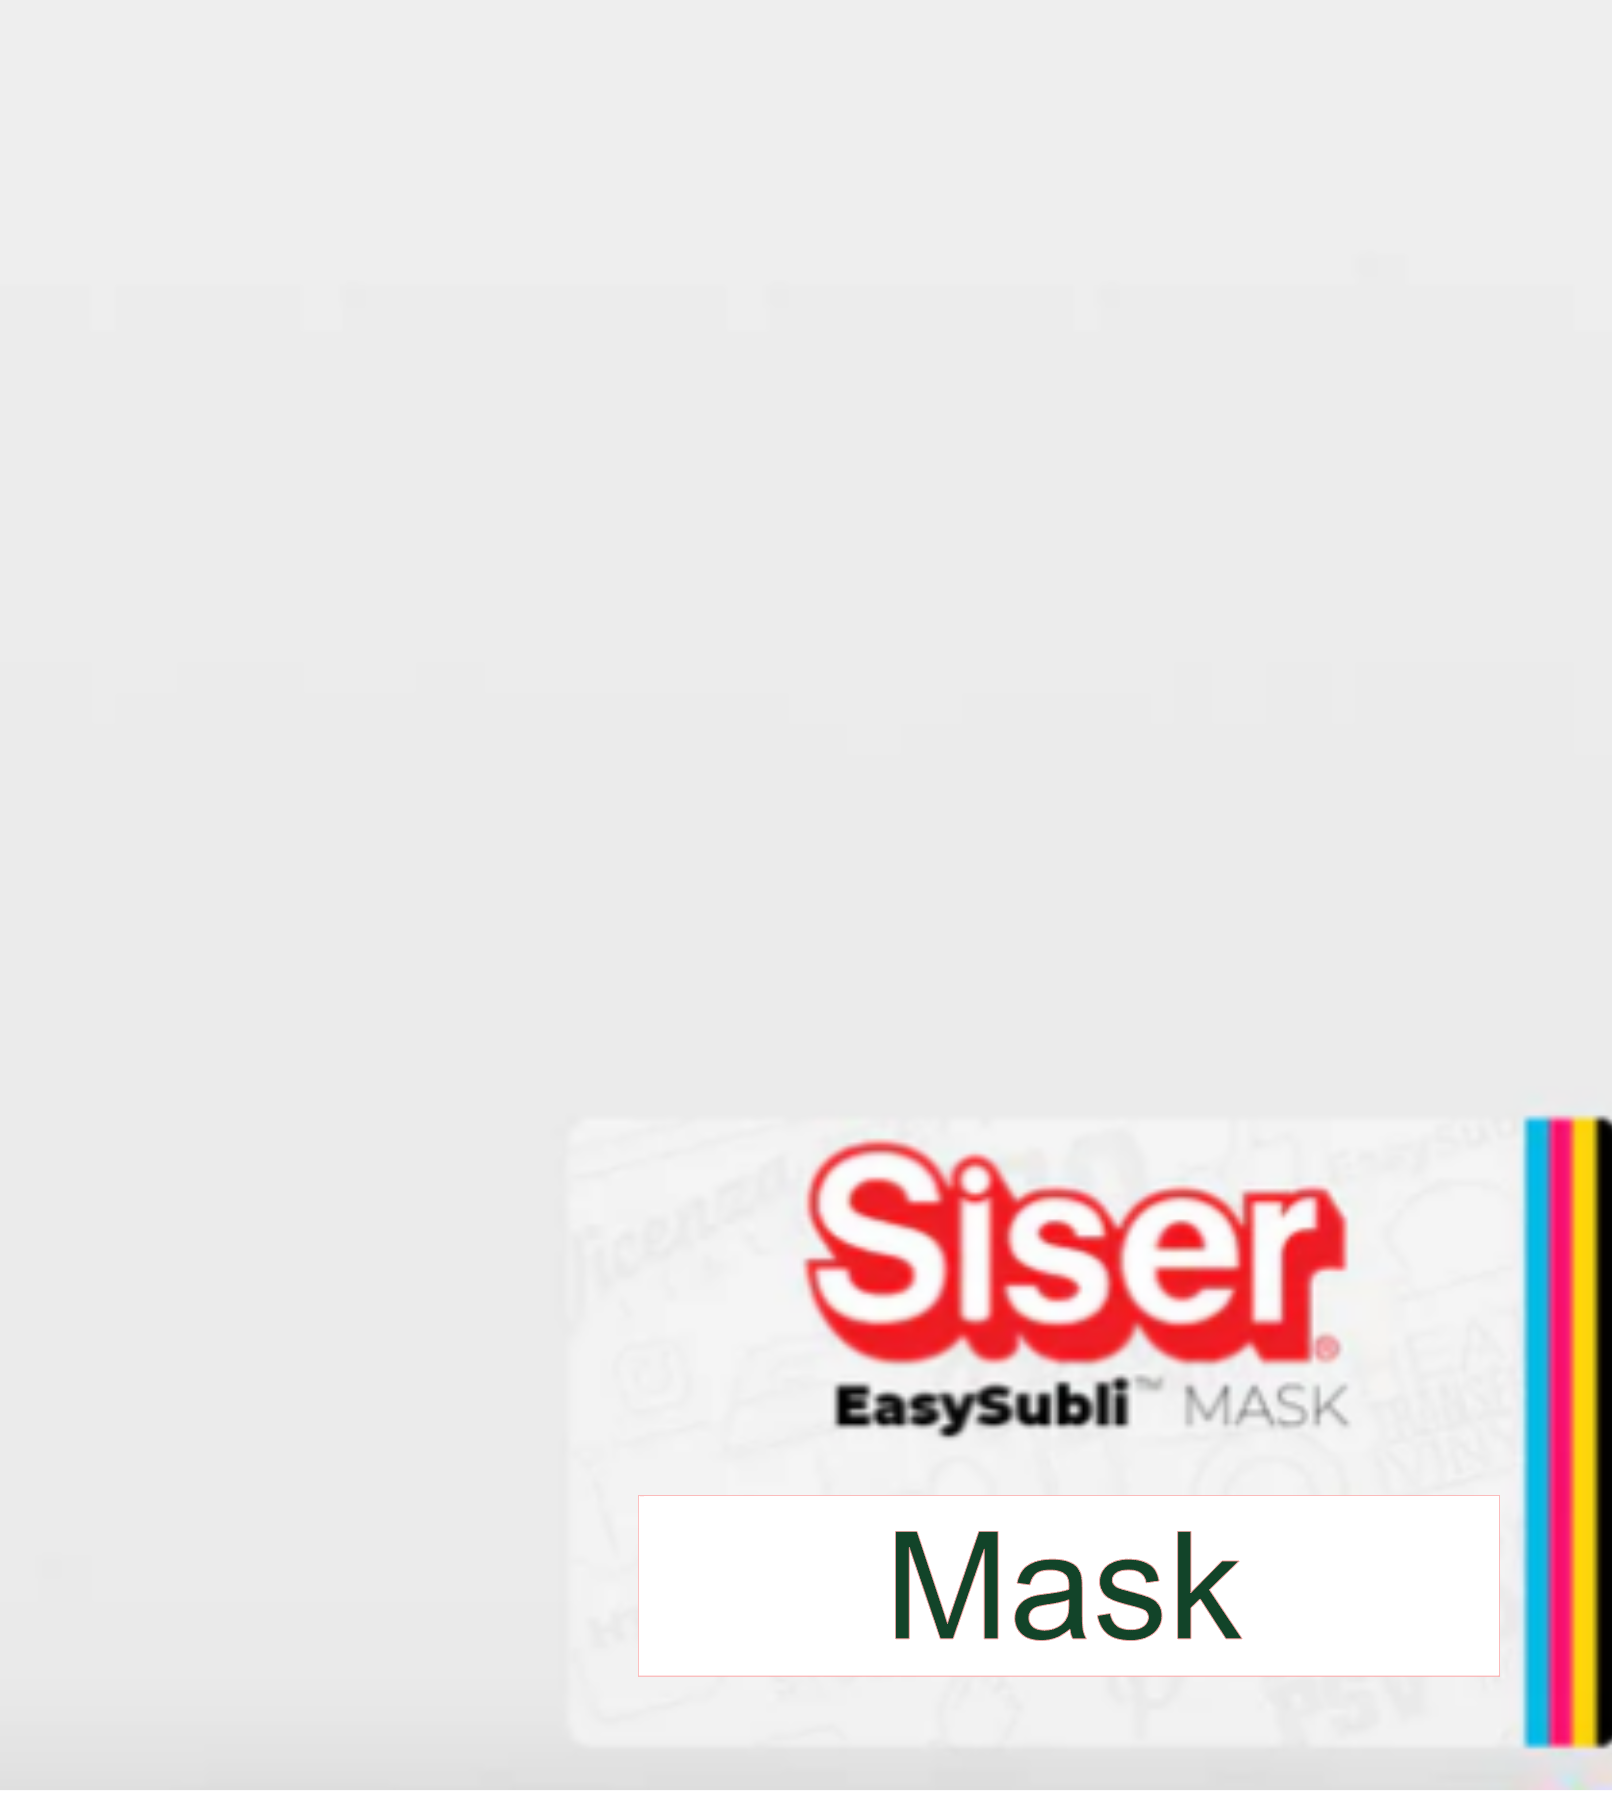 Siser EasySubli - 11 x 8.4 Sheet